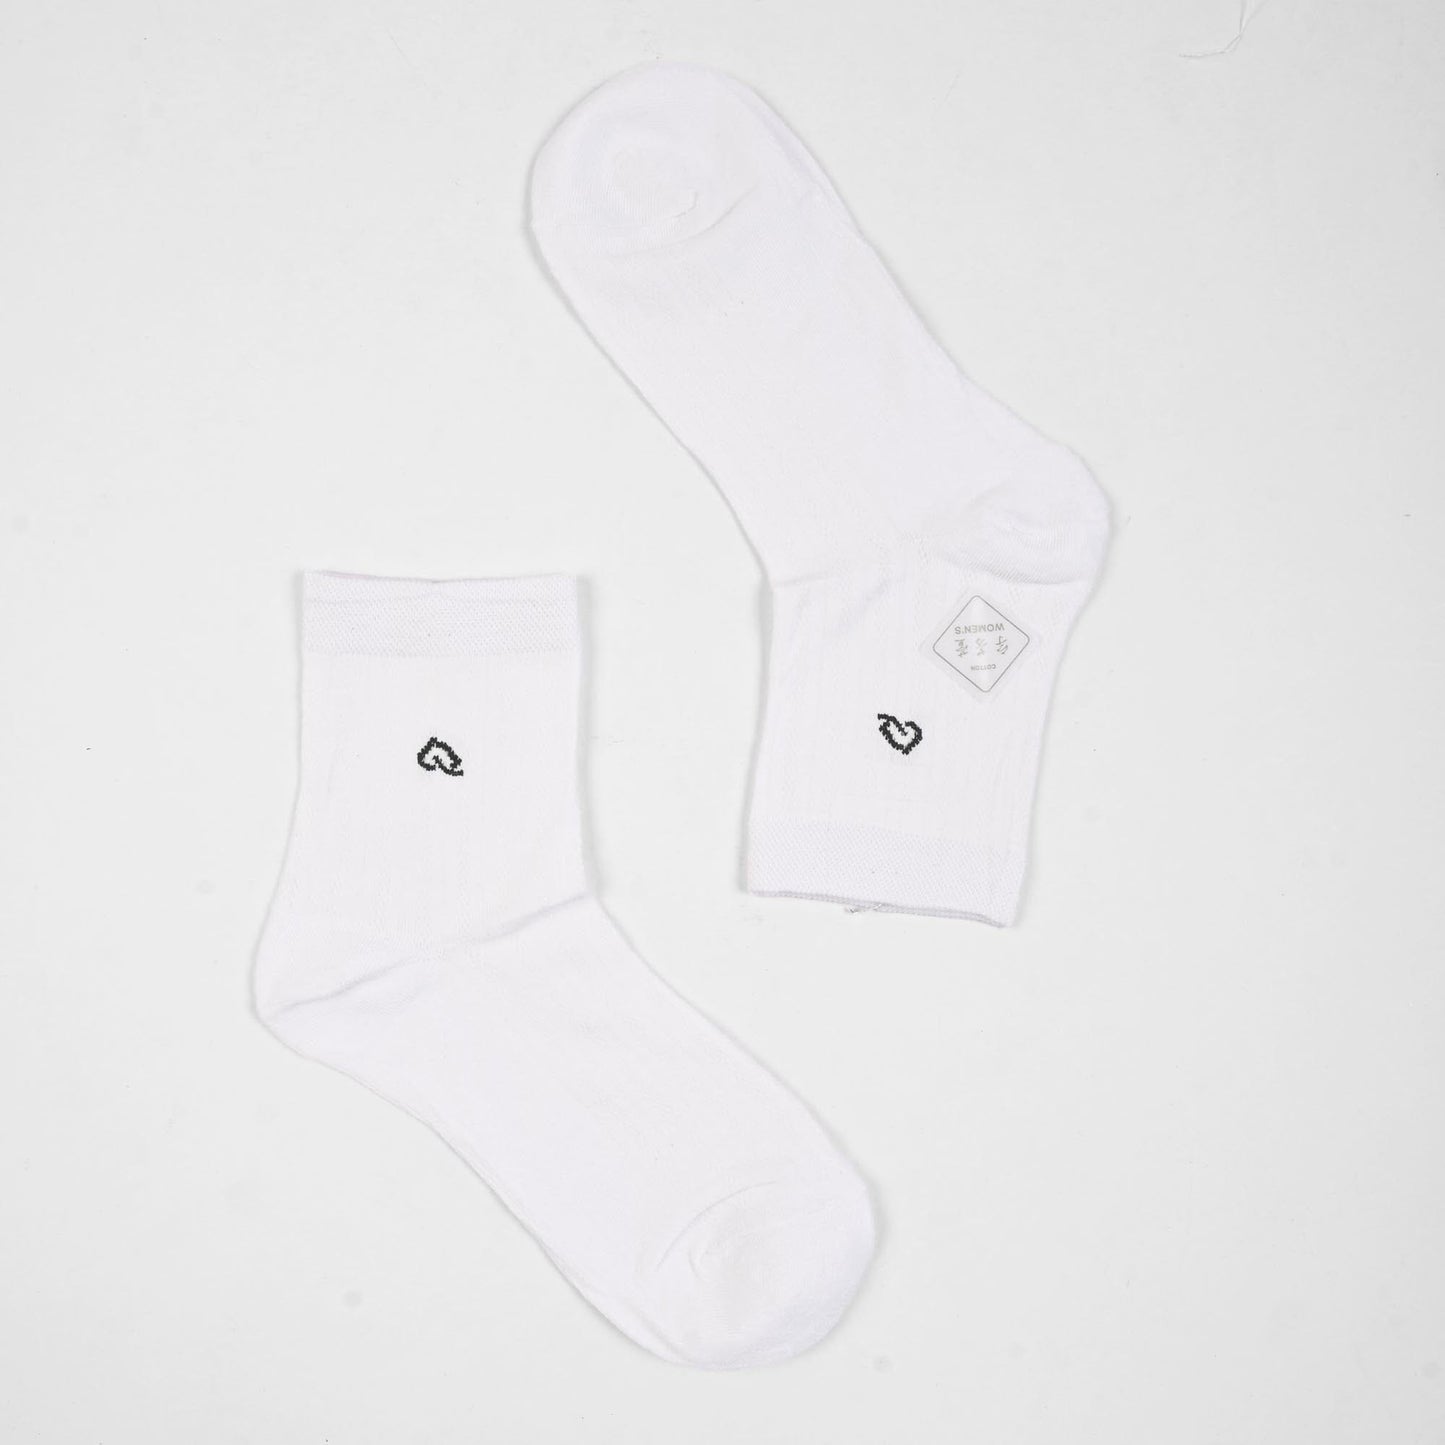 Vienna Women's Graz Anklet Socks Socks SRL White D2 EUR 35-40